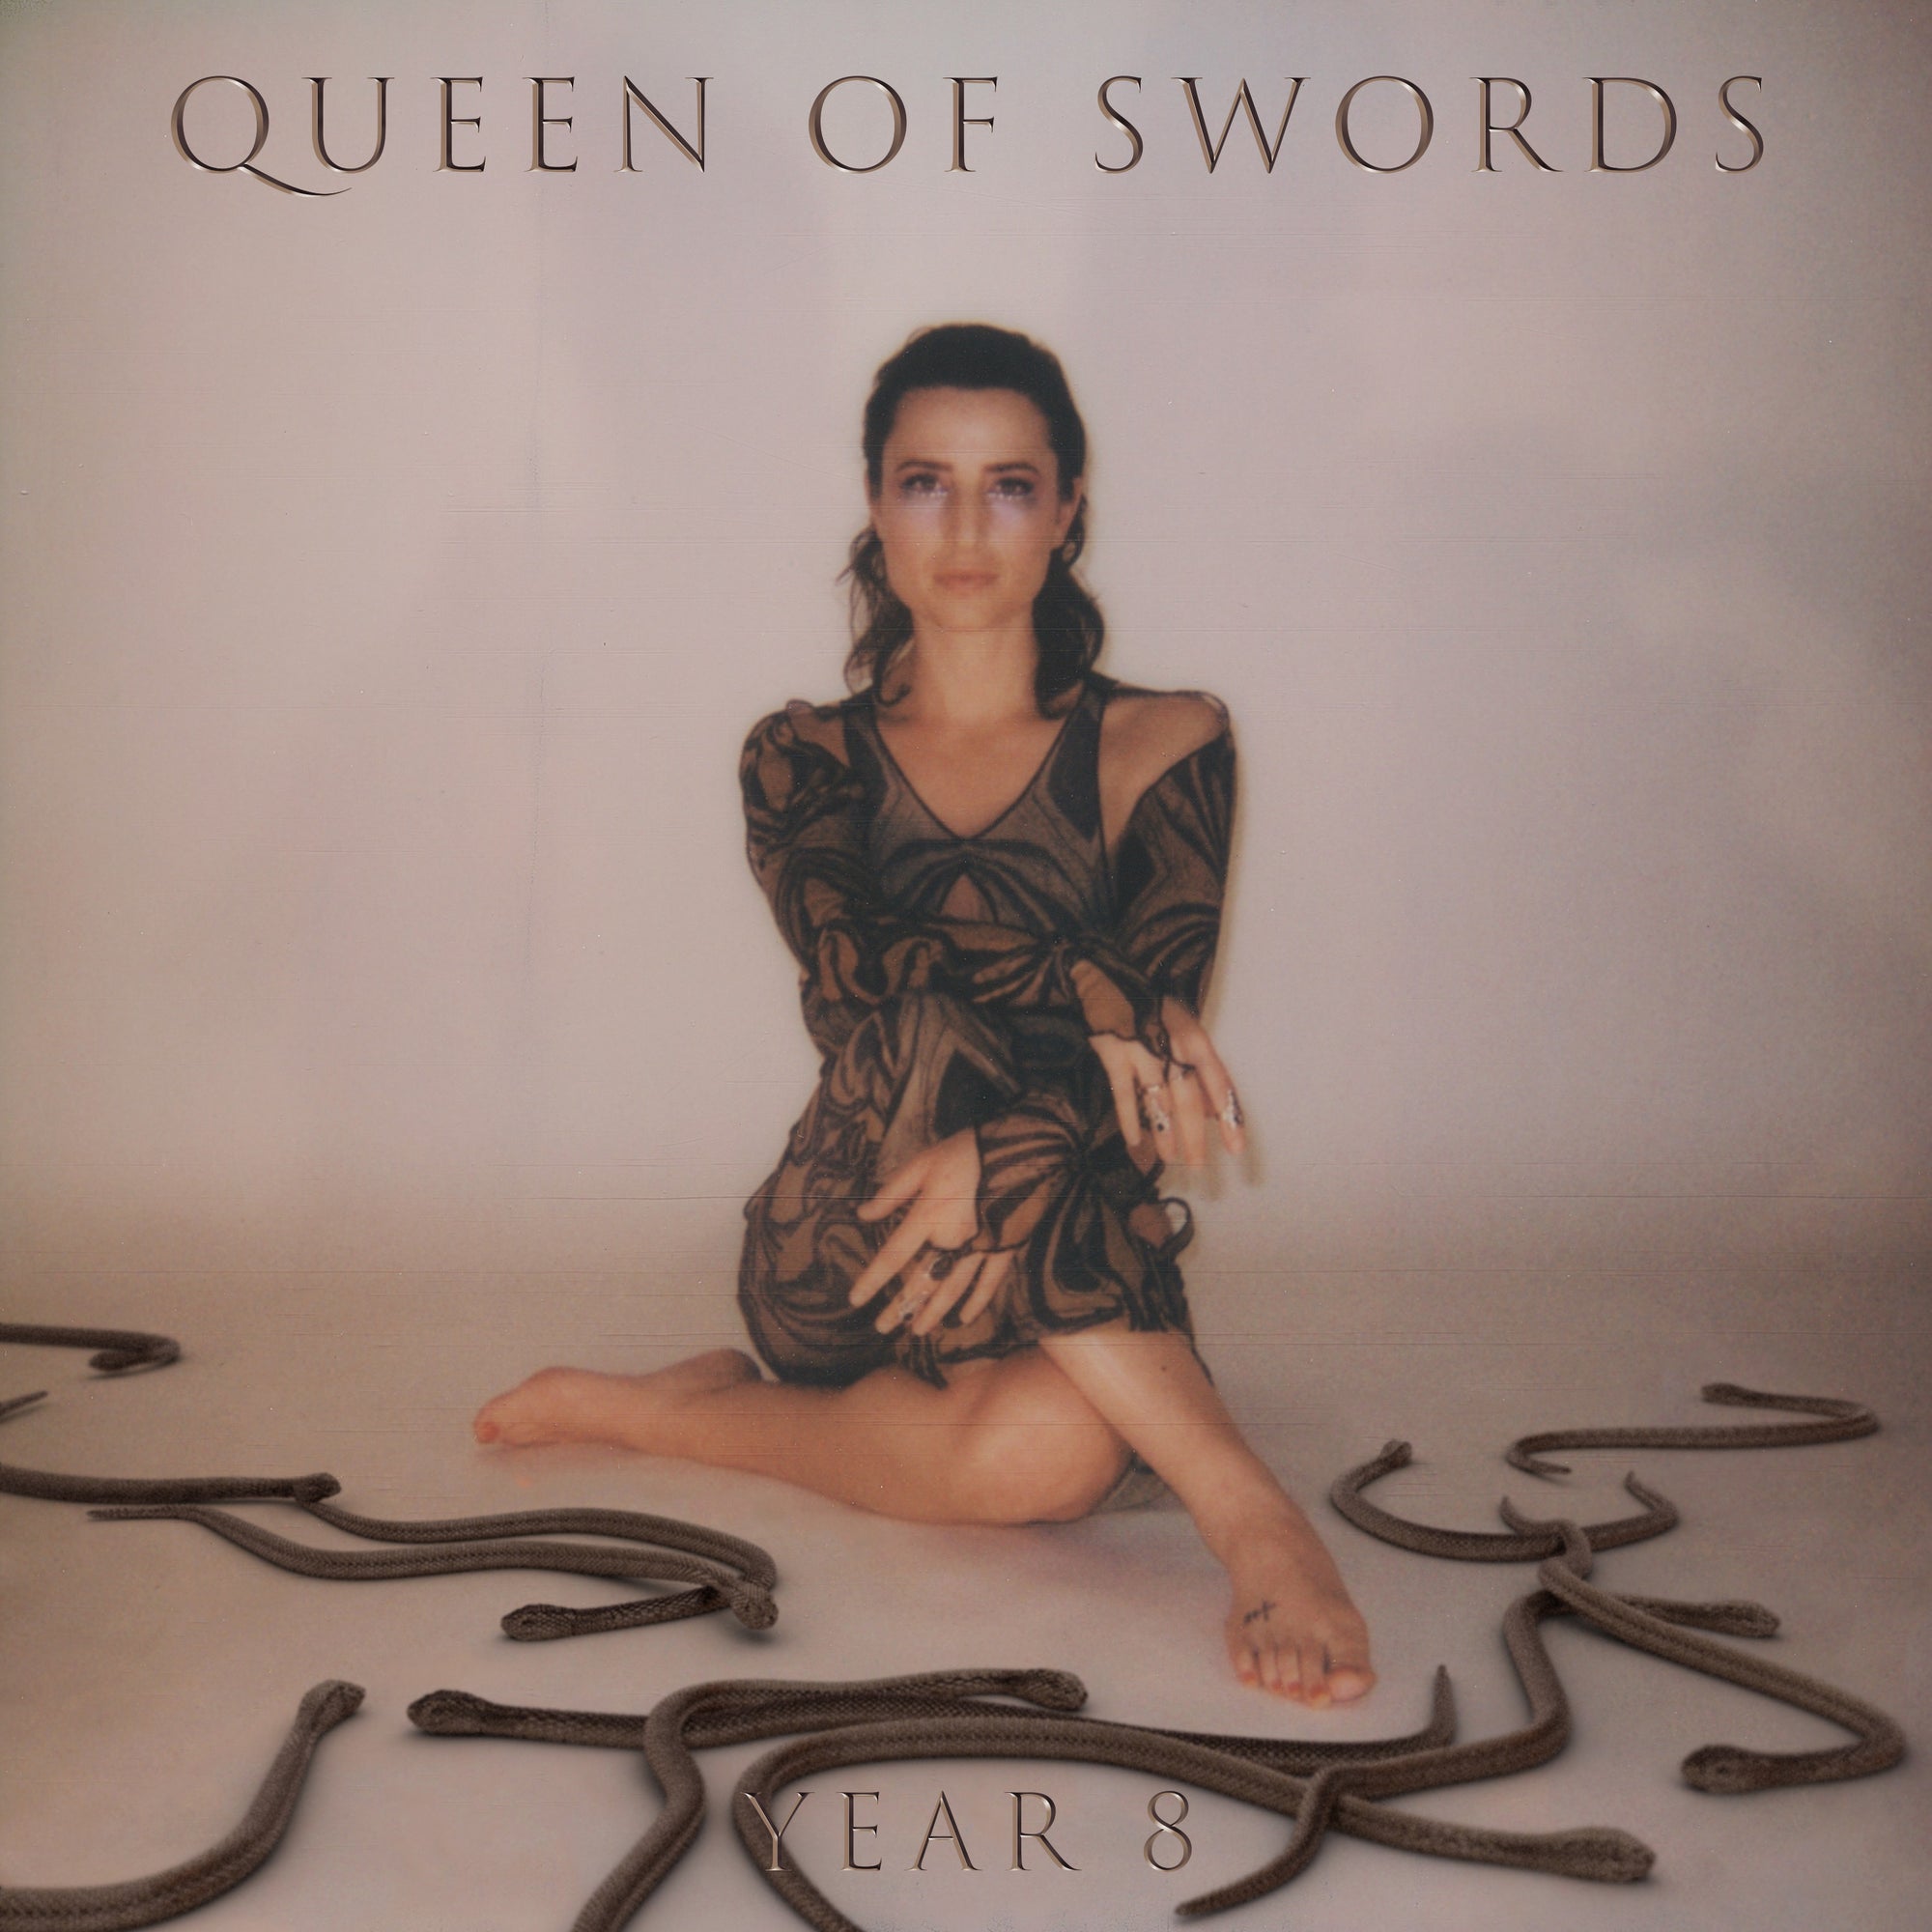 Queen of Swords "Year 8" Cassette